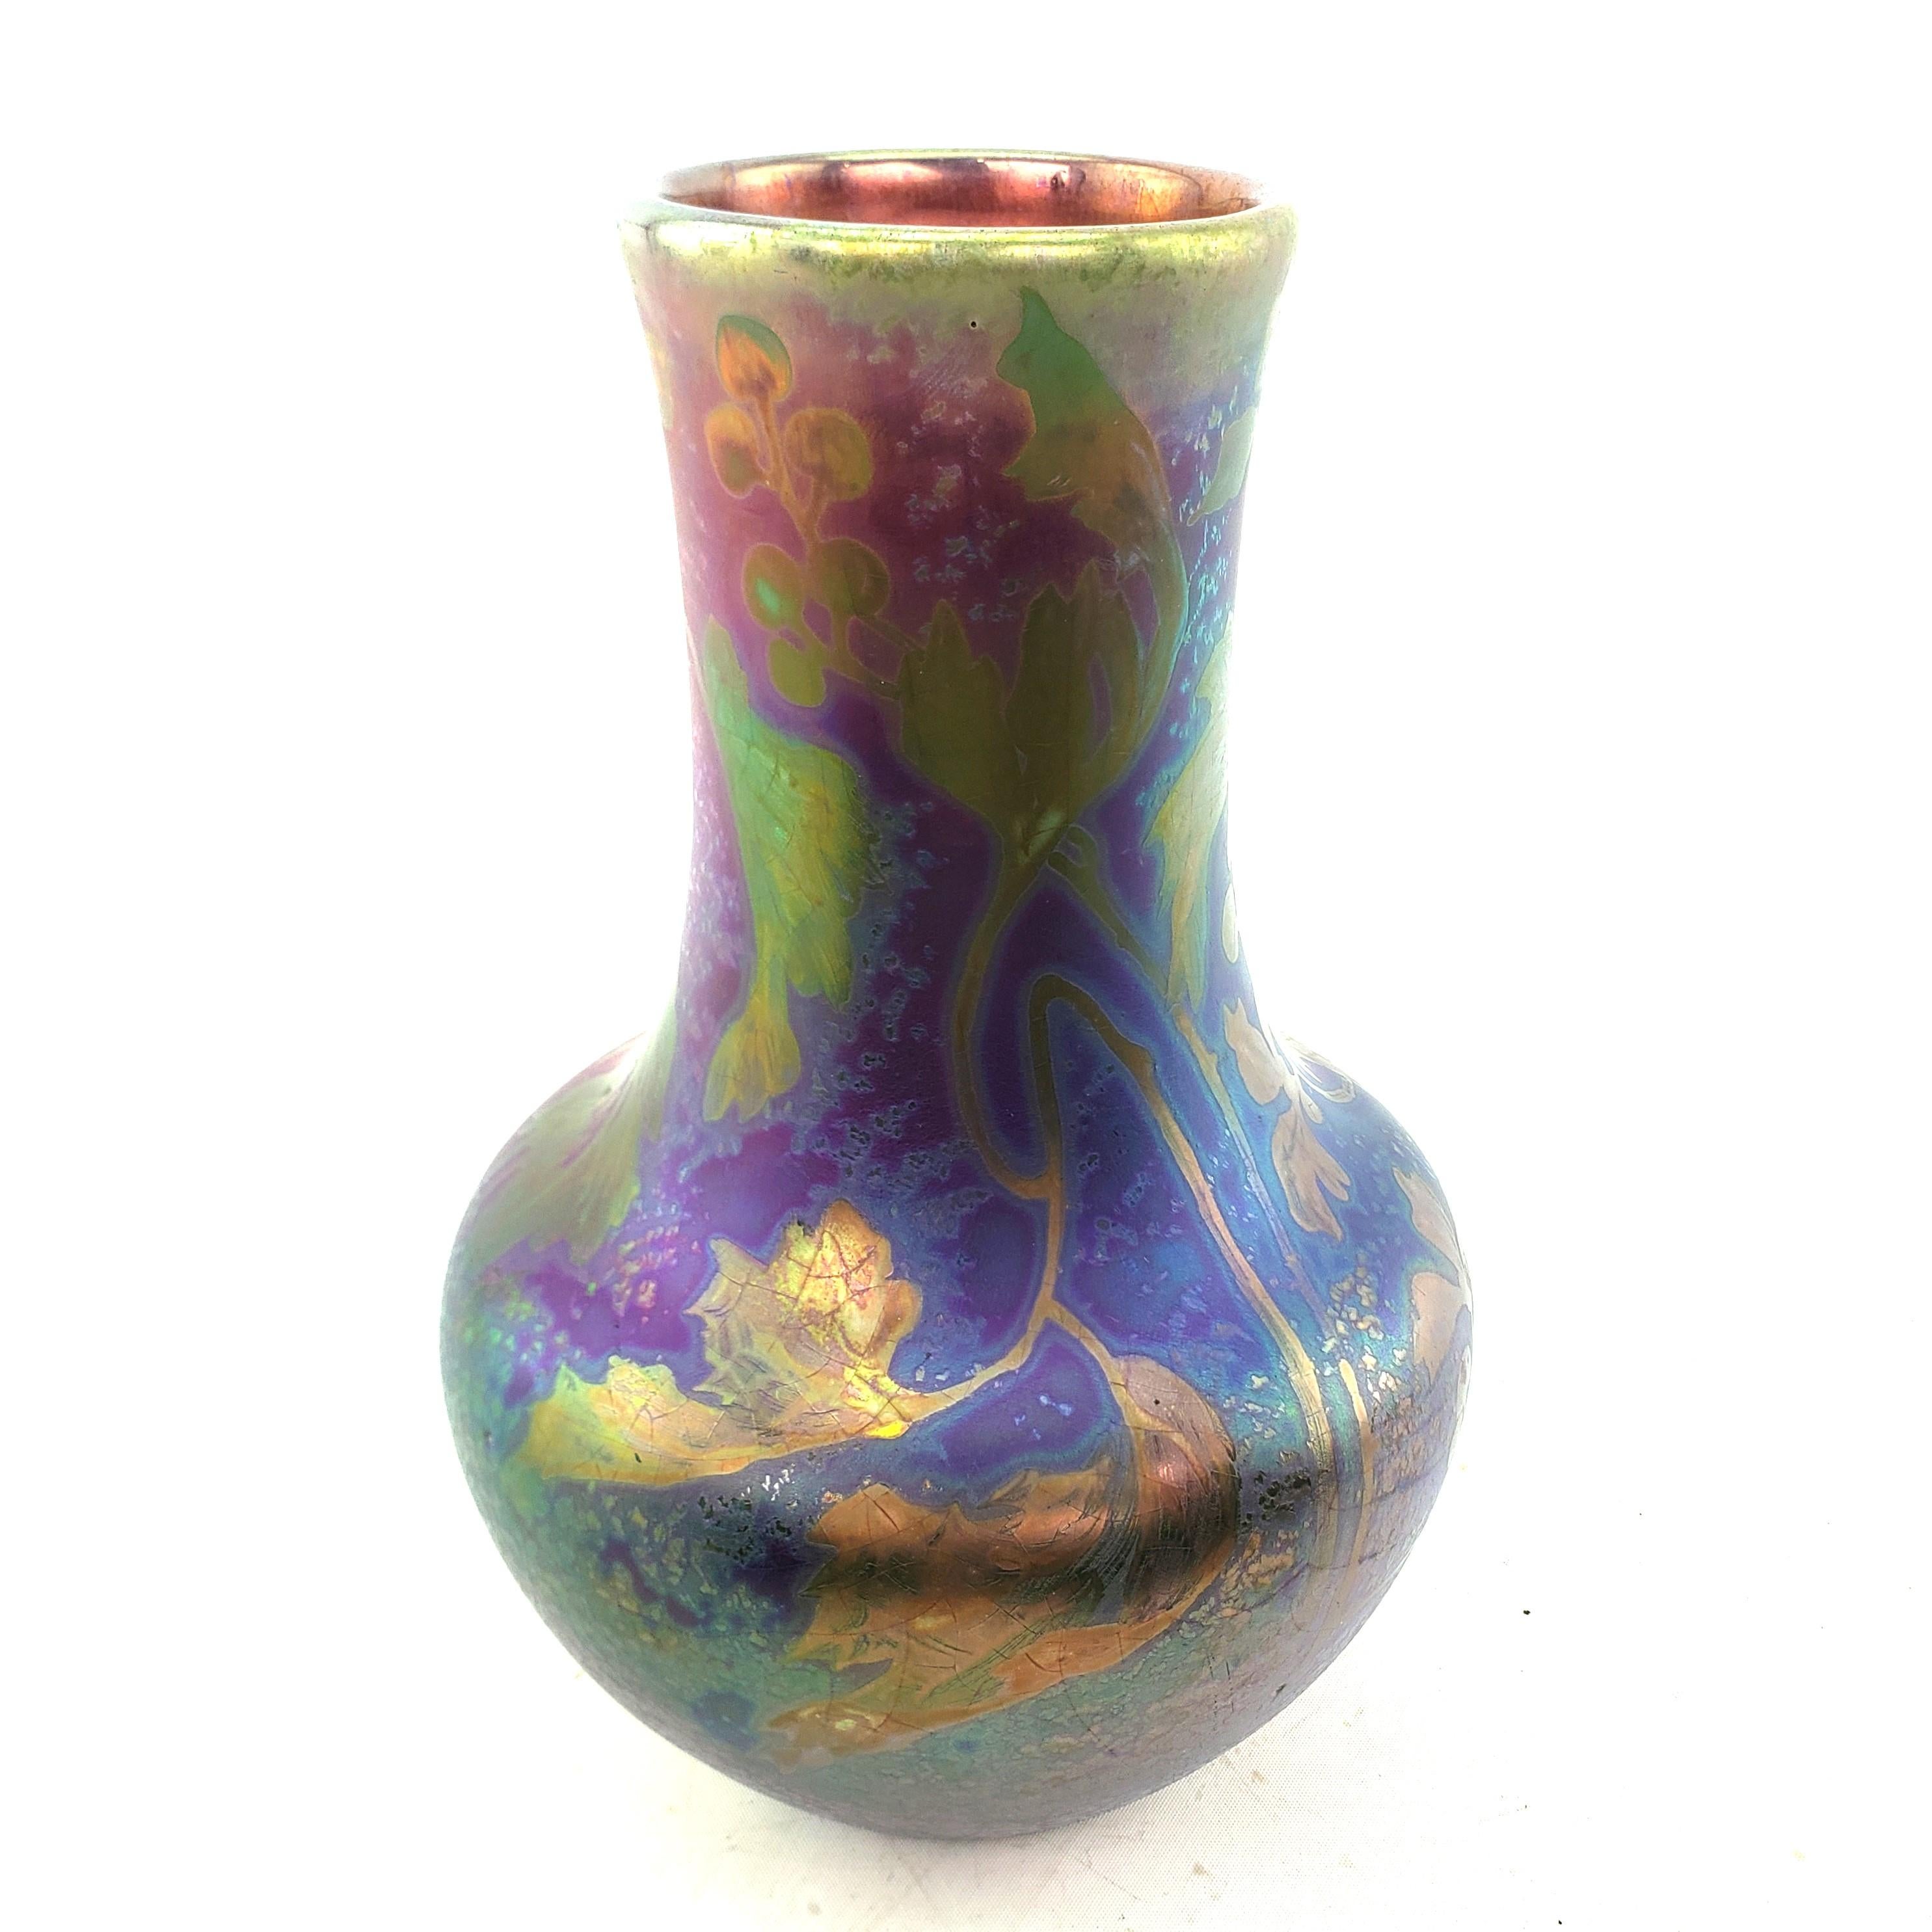 Diese Vase wurde von der berühmten Weller Pottery Fabrik in den Vereinigten Staaten um 1910 im Jugendstil hergestellt. Die Vase ist mit einem stark irisierenden Kobaltblau, Grün und Violett mit stilisiertem Blumendekor und einer glänzenden